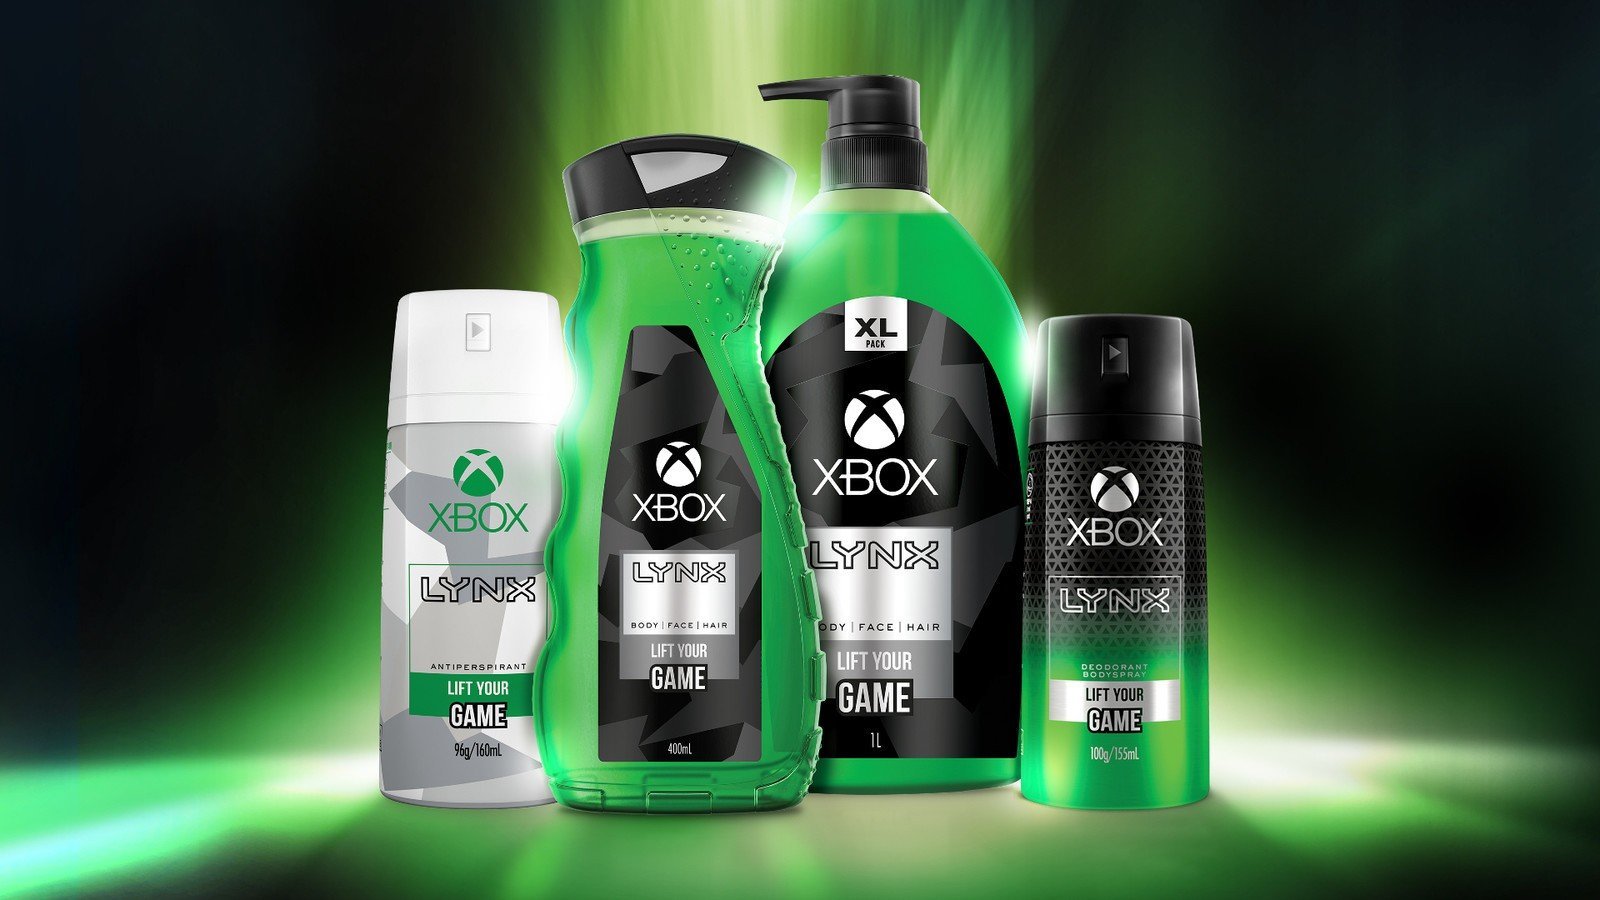 Xbox temalı kozmetik ürünleri geliyor